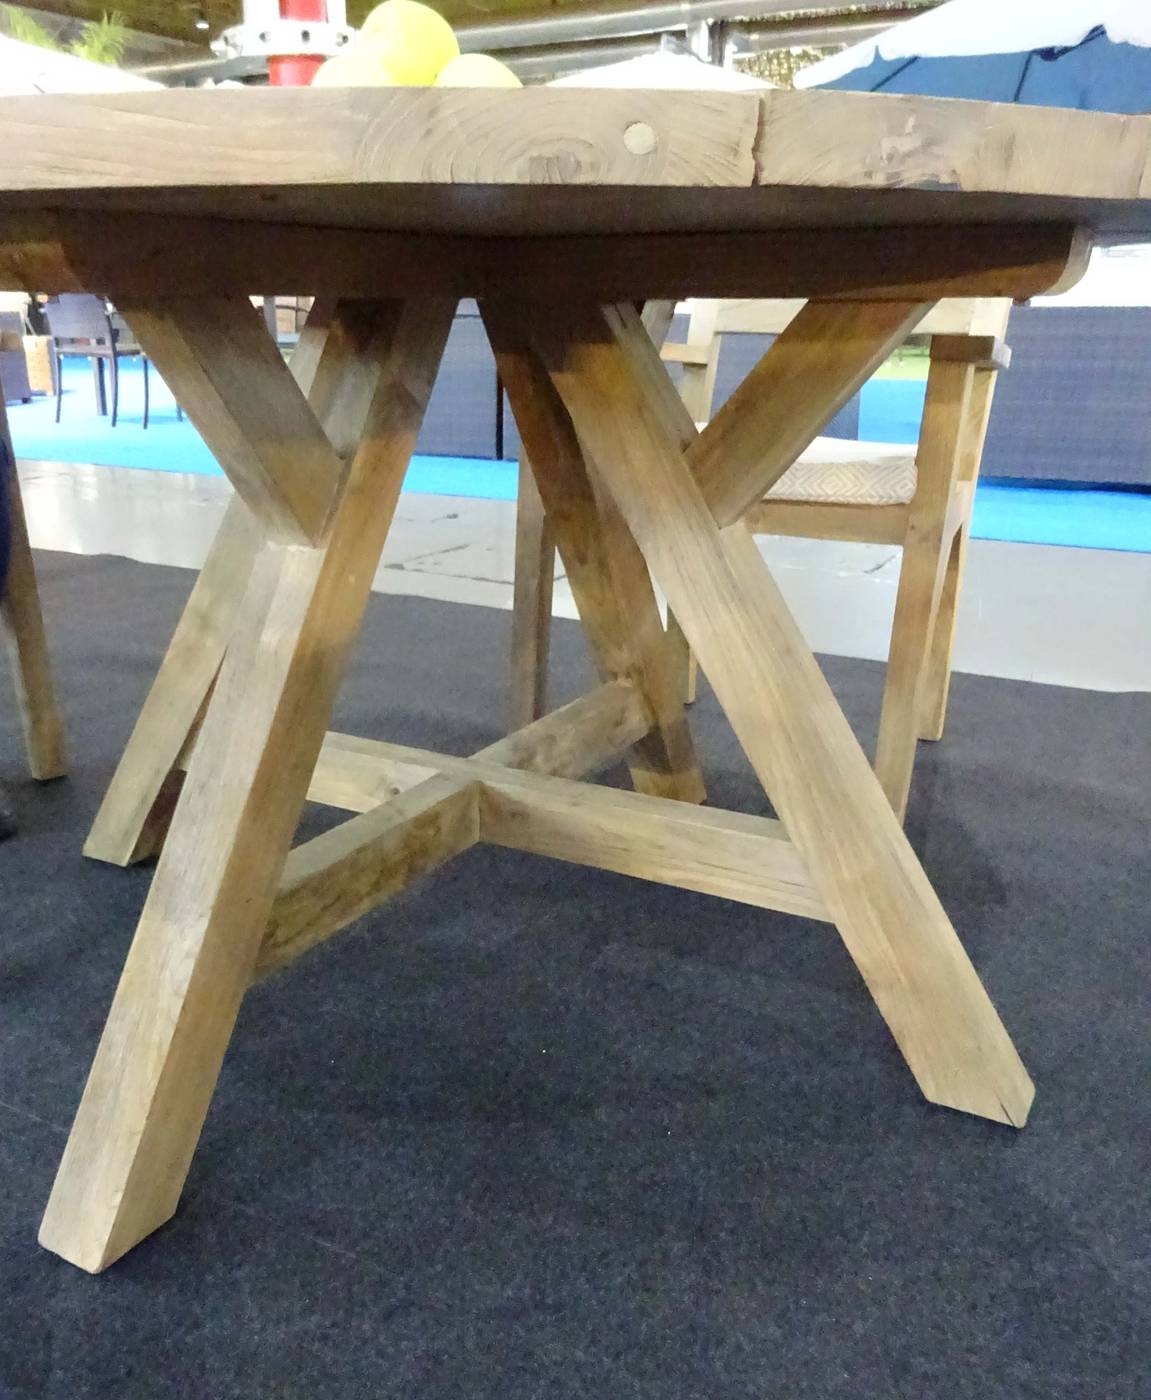 Conjunto Madera Teka Windsor-130/4 - Conjunto para jardín de madera de teka lux: Mesa redonda 130 cm. y 4 sillones con cojines